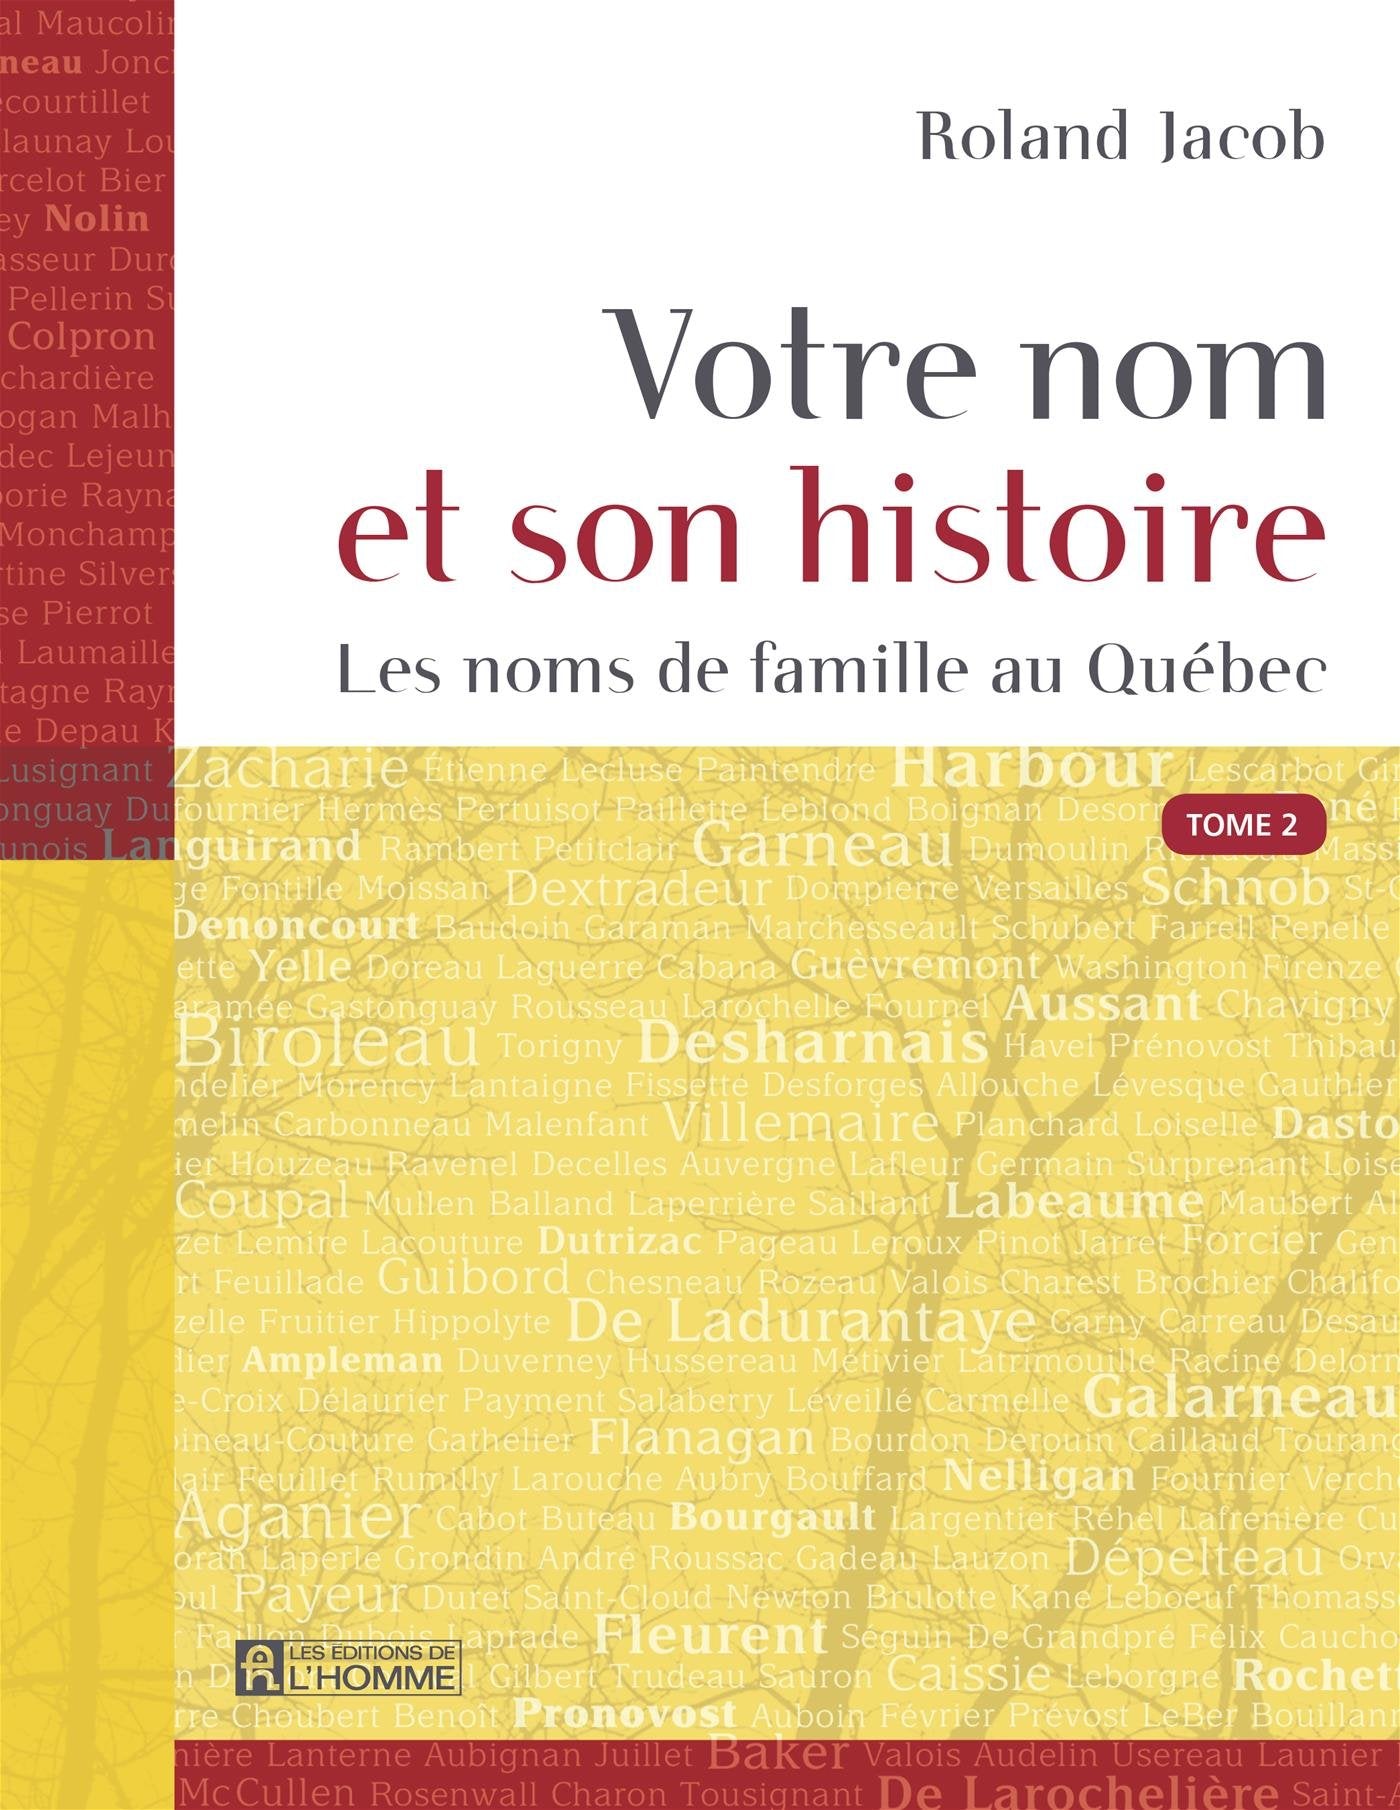 Votre nom et son histoire # 2 : Les noms de famille au Québec - Roland Jacob